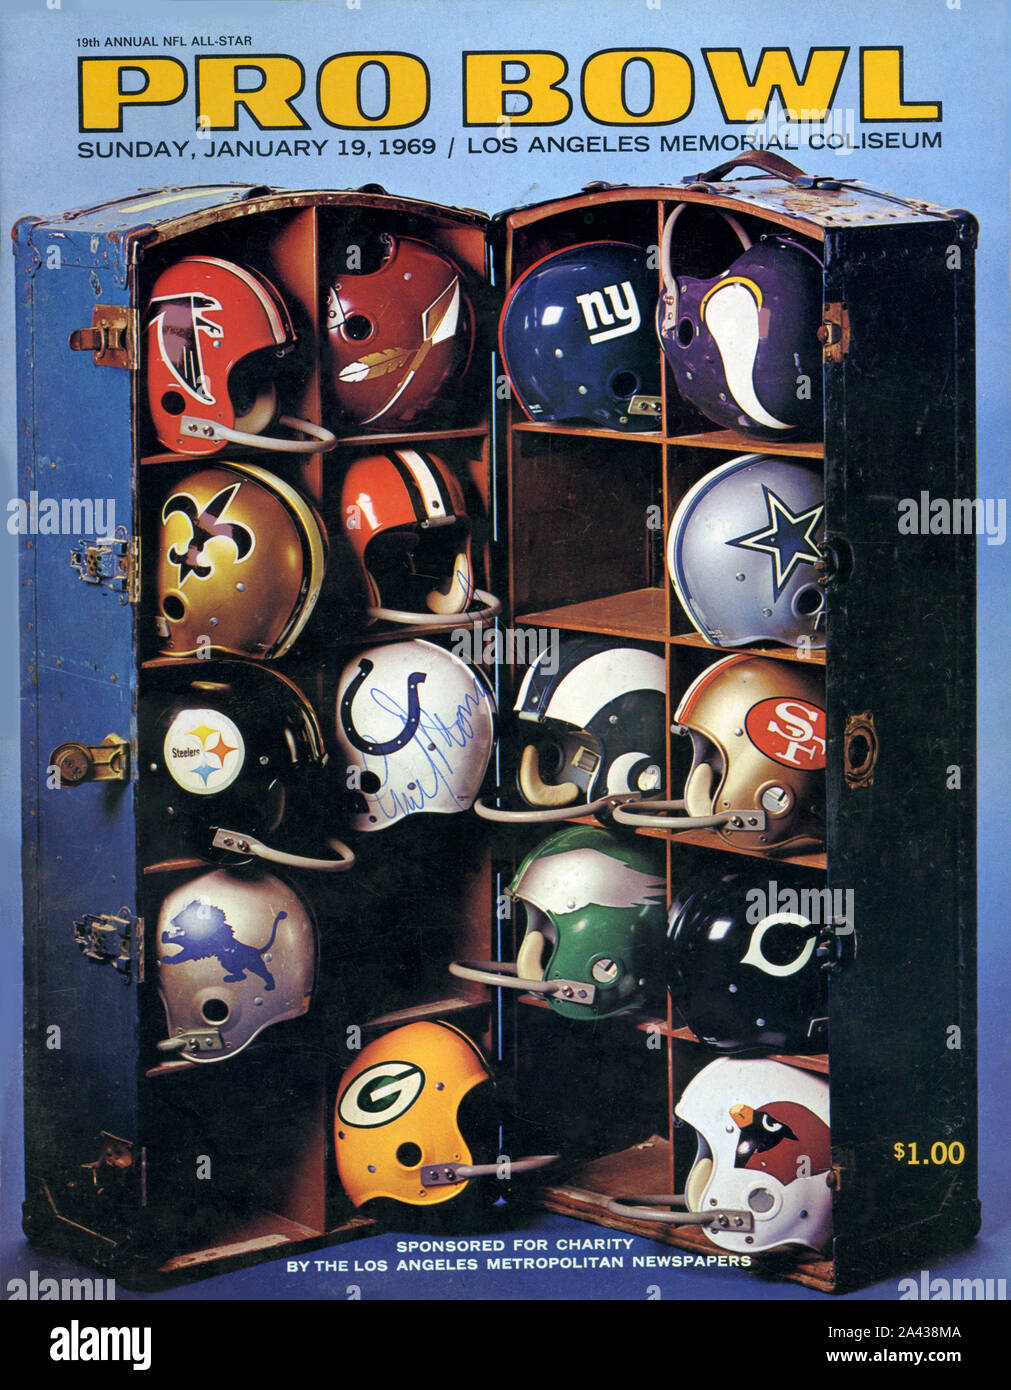 Programma di Souvenir coperchio per la NFL's Pro Bowl tutte le star del gioco del calcio presso il Los Angeles Memorial Coliseum nel 1969. Foto Stock